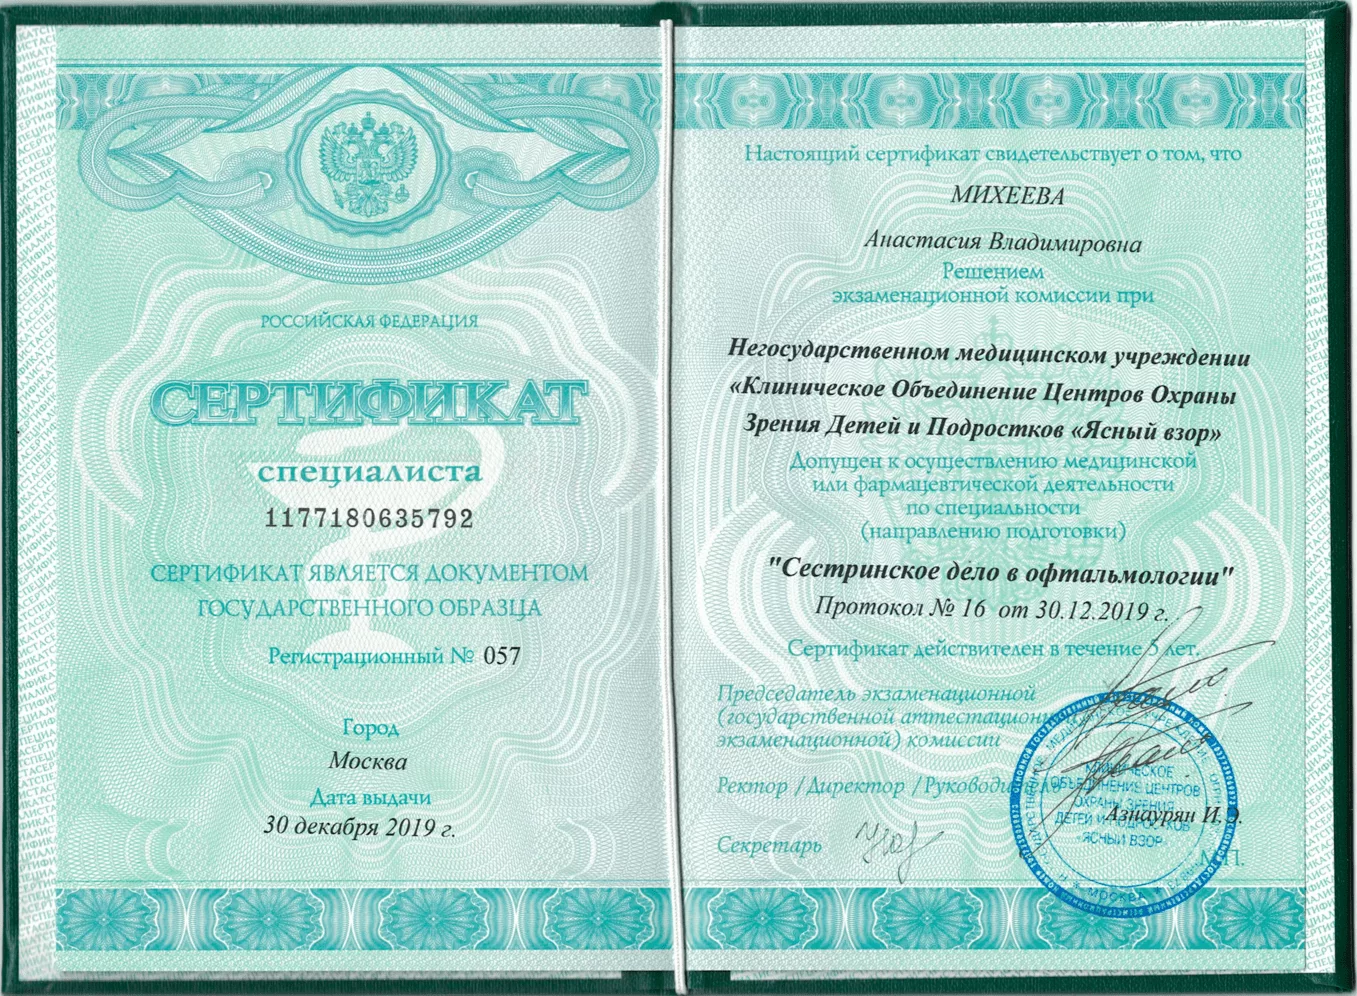 Диплом и сертификат  Михеева Анастасия Владимировна